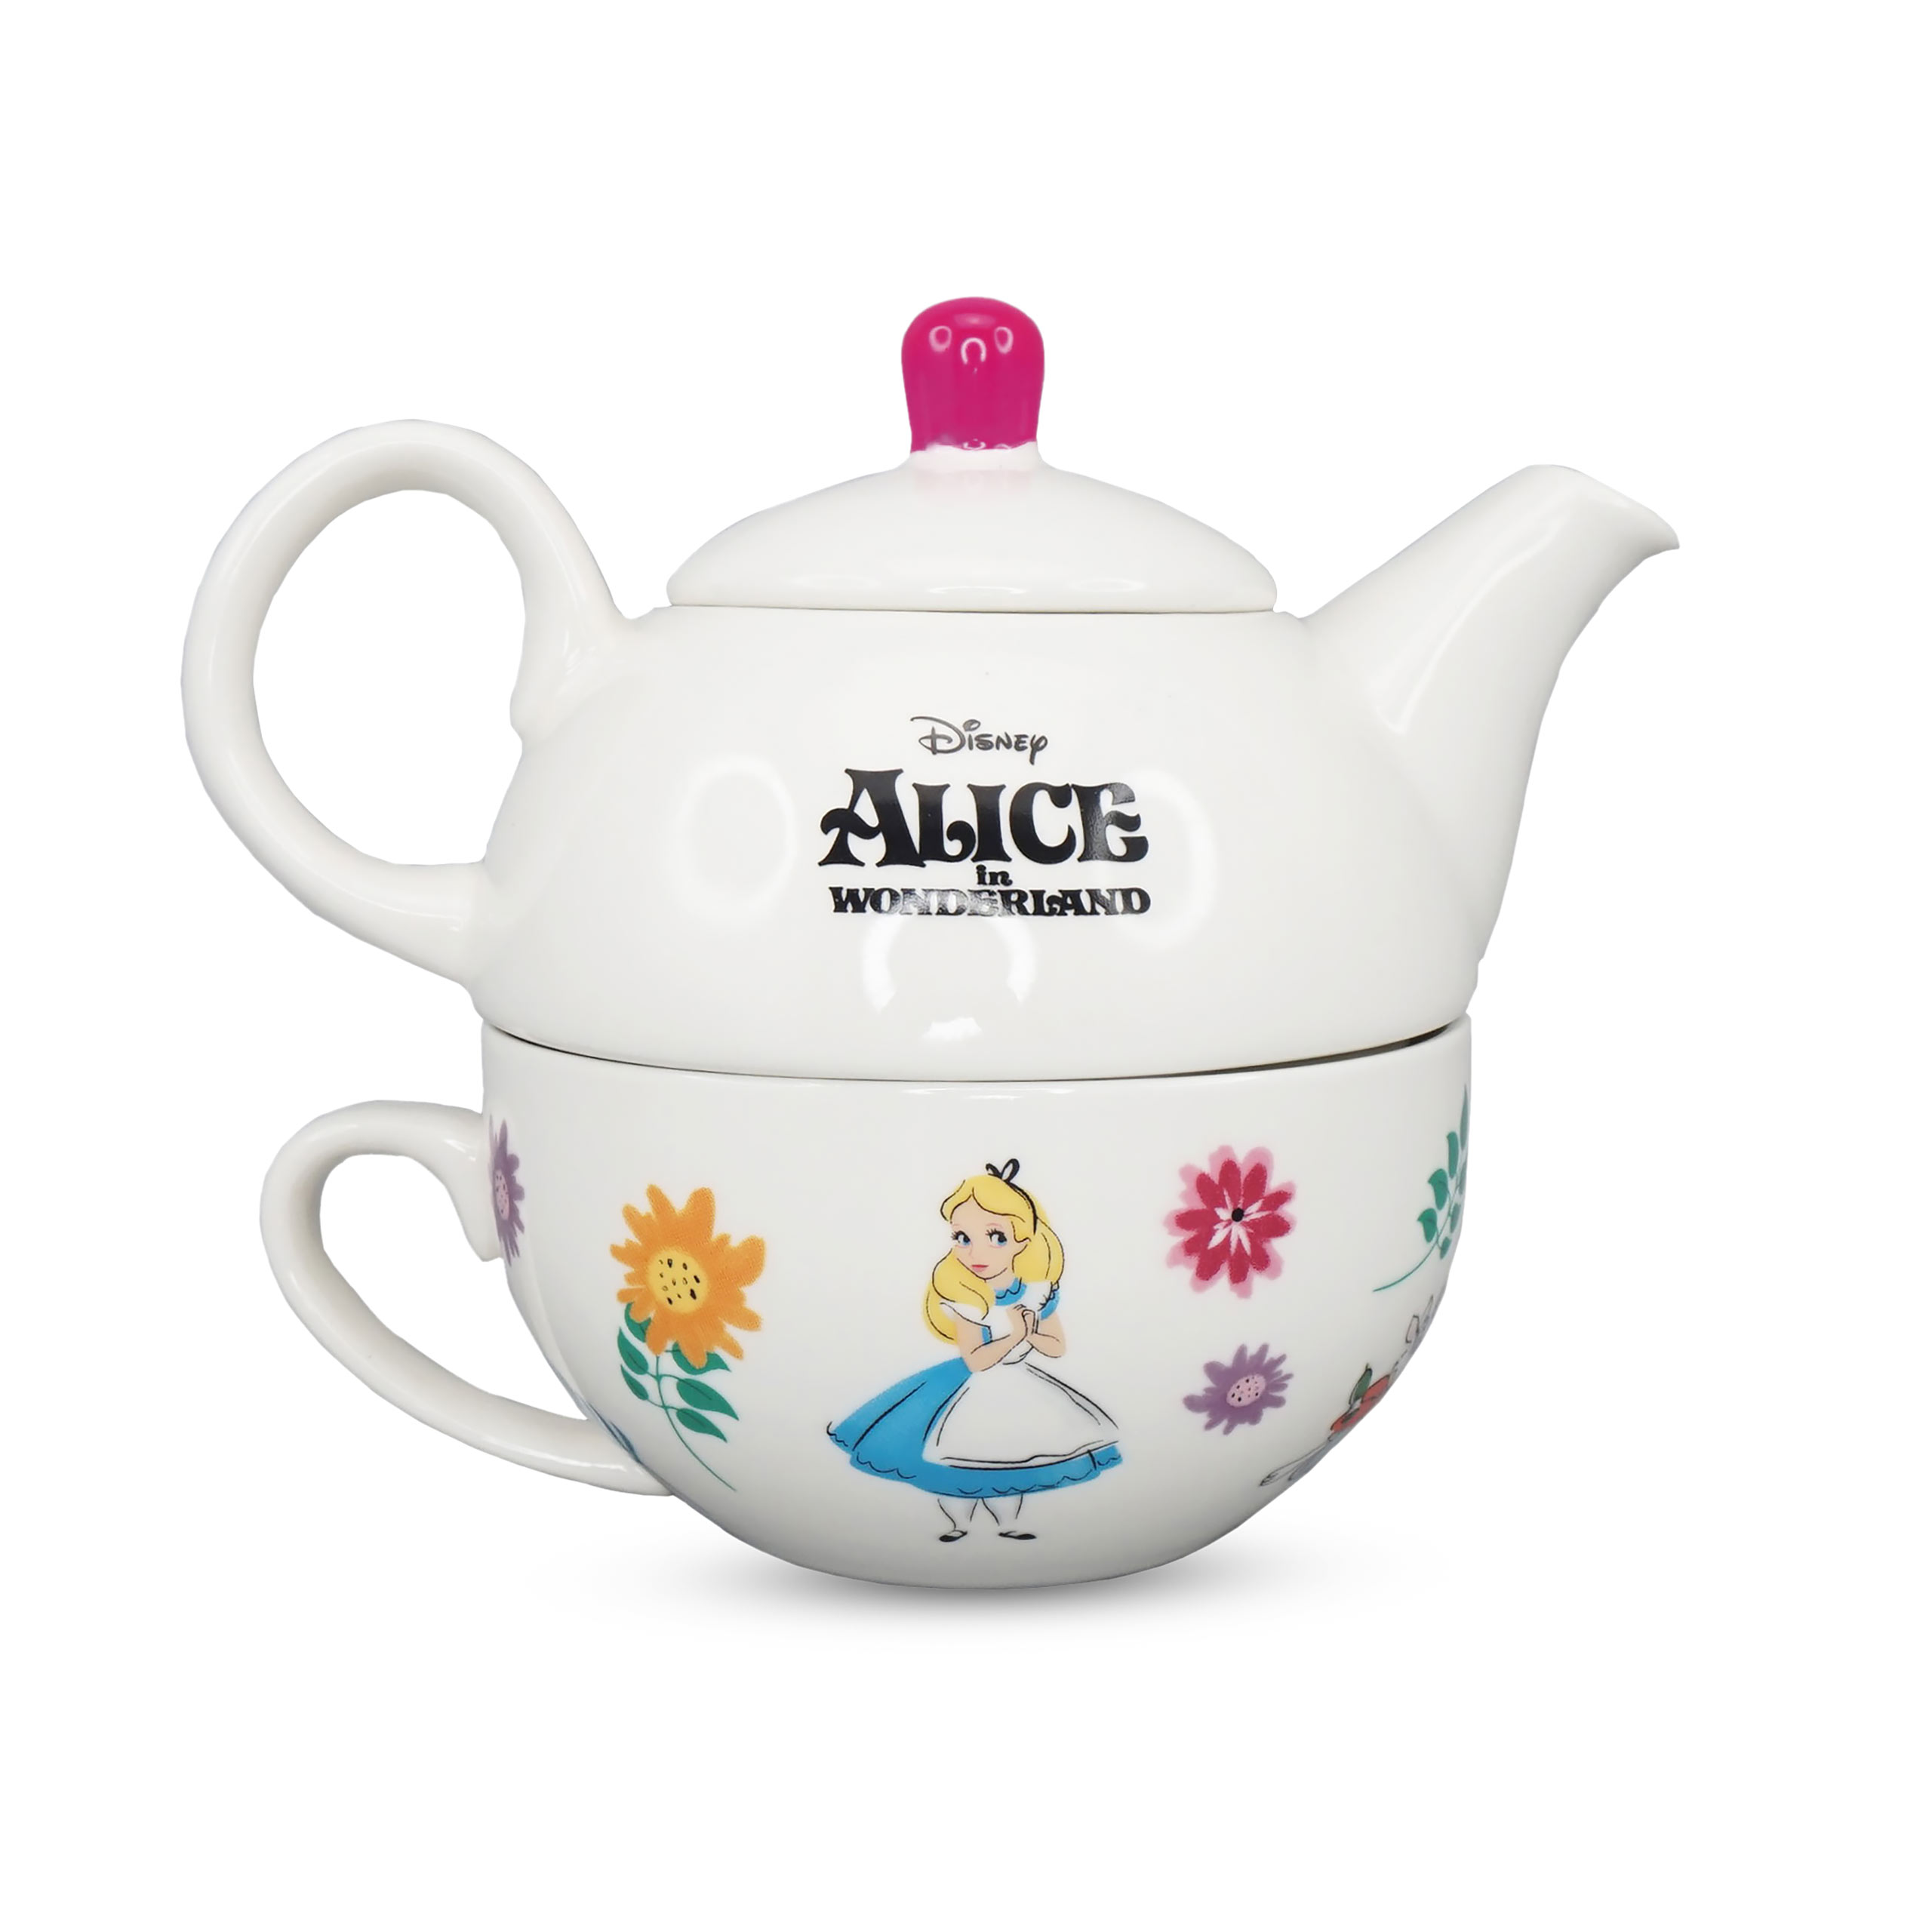 Alice im Wunderland - Looking For Wonderland Teekanne mit Tasse